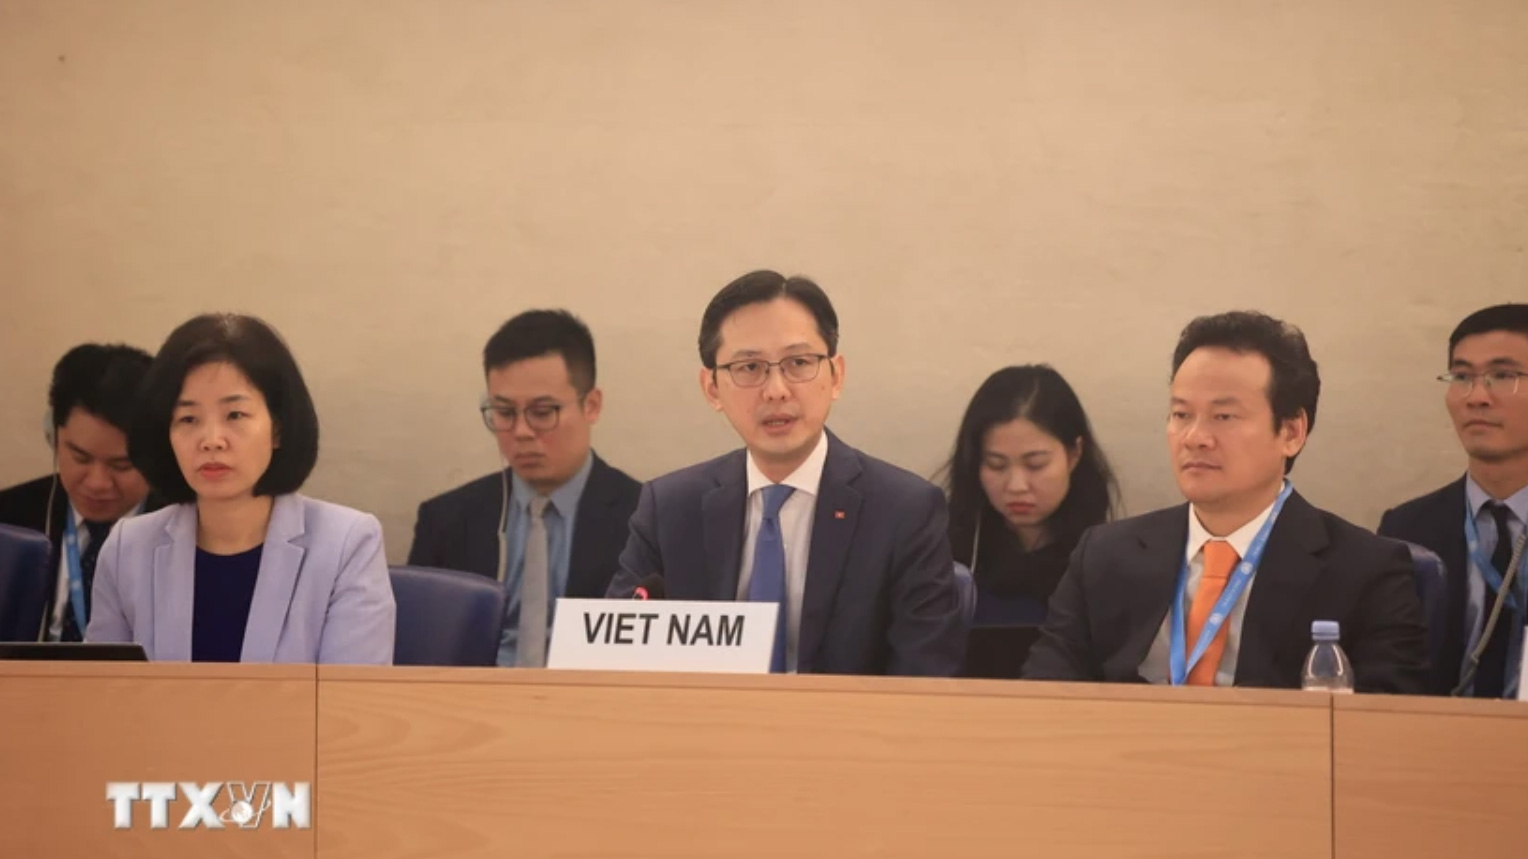 Quốc tế đánh giá cao thành tựu của Việt Nam về bảo vệ, thúc đẩy quyền con người